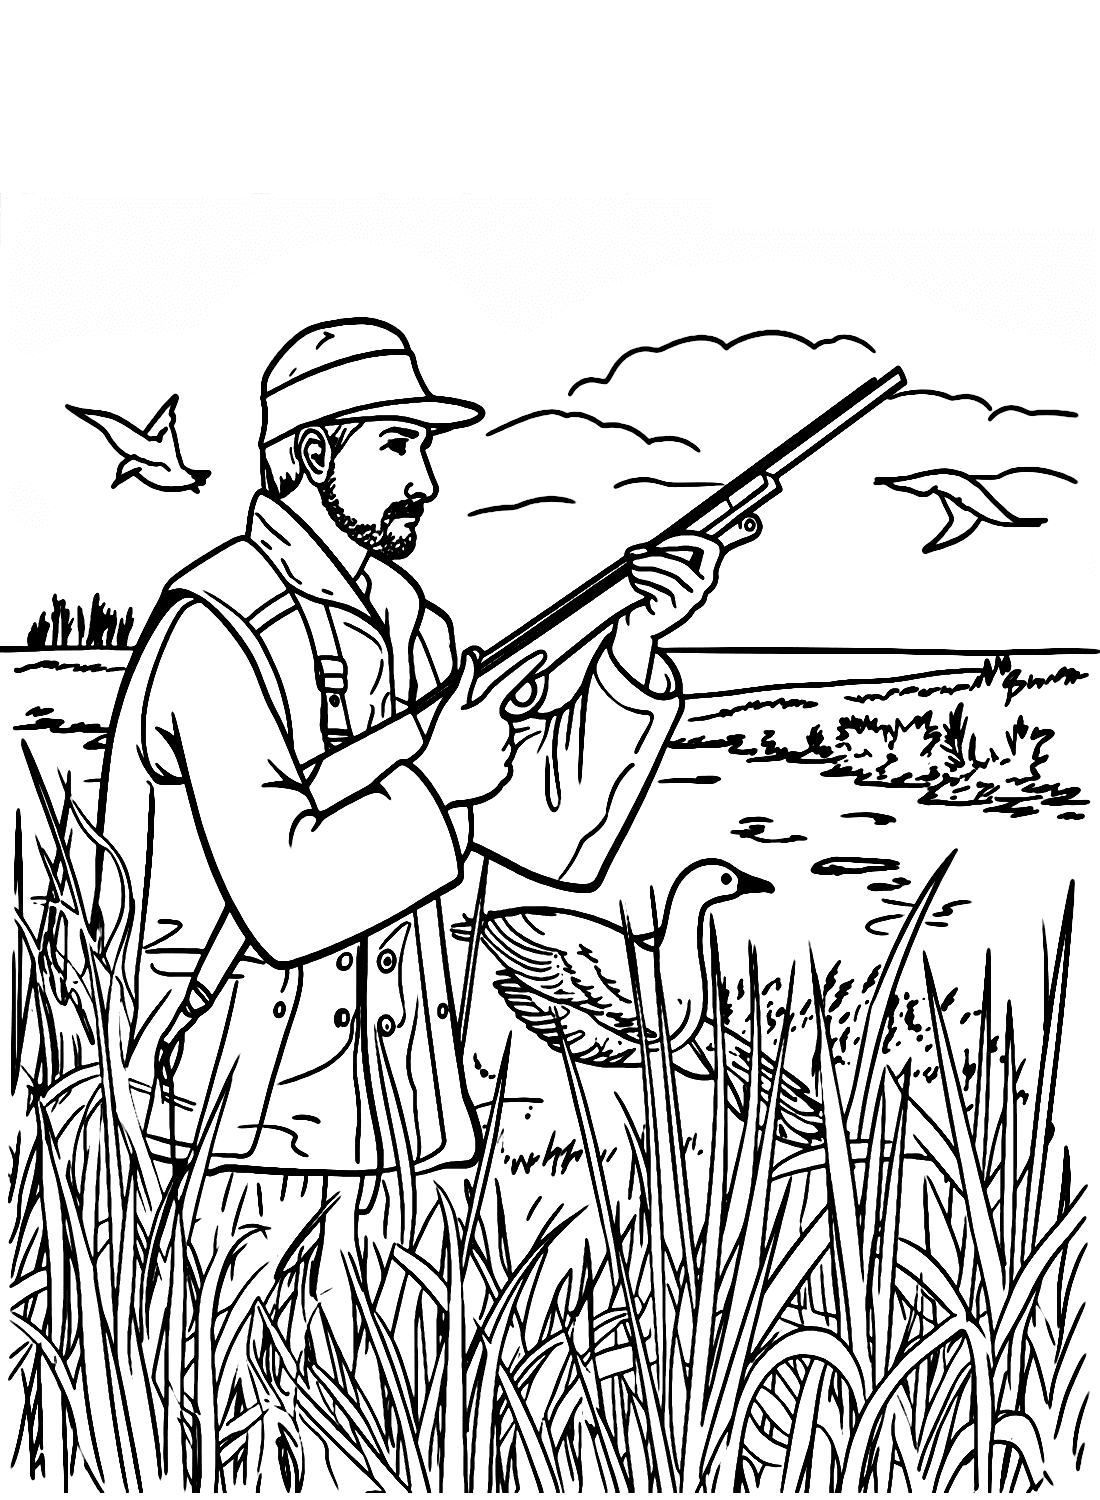 Homem caçando patos no campo from Hunting